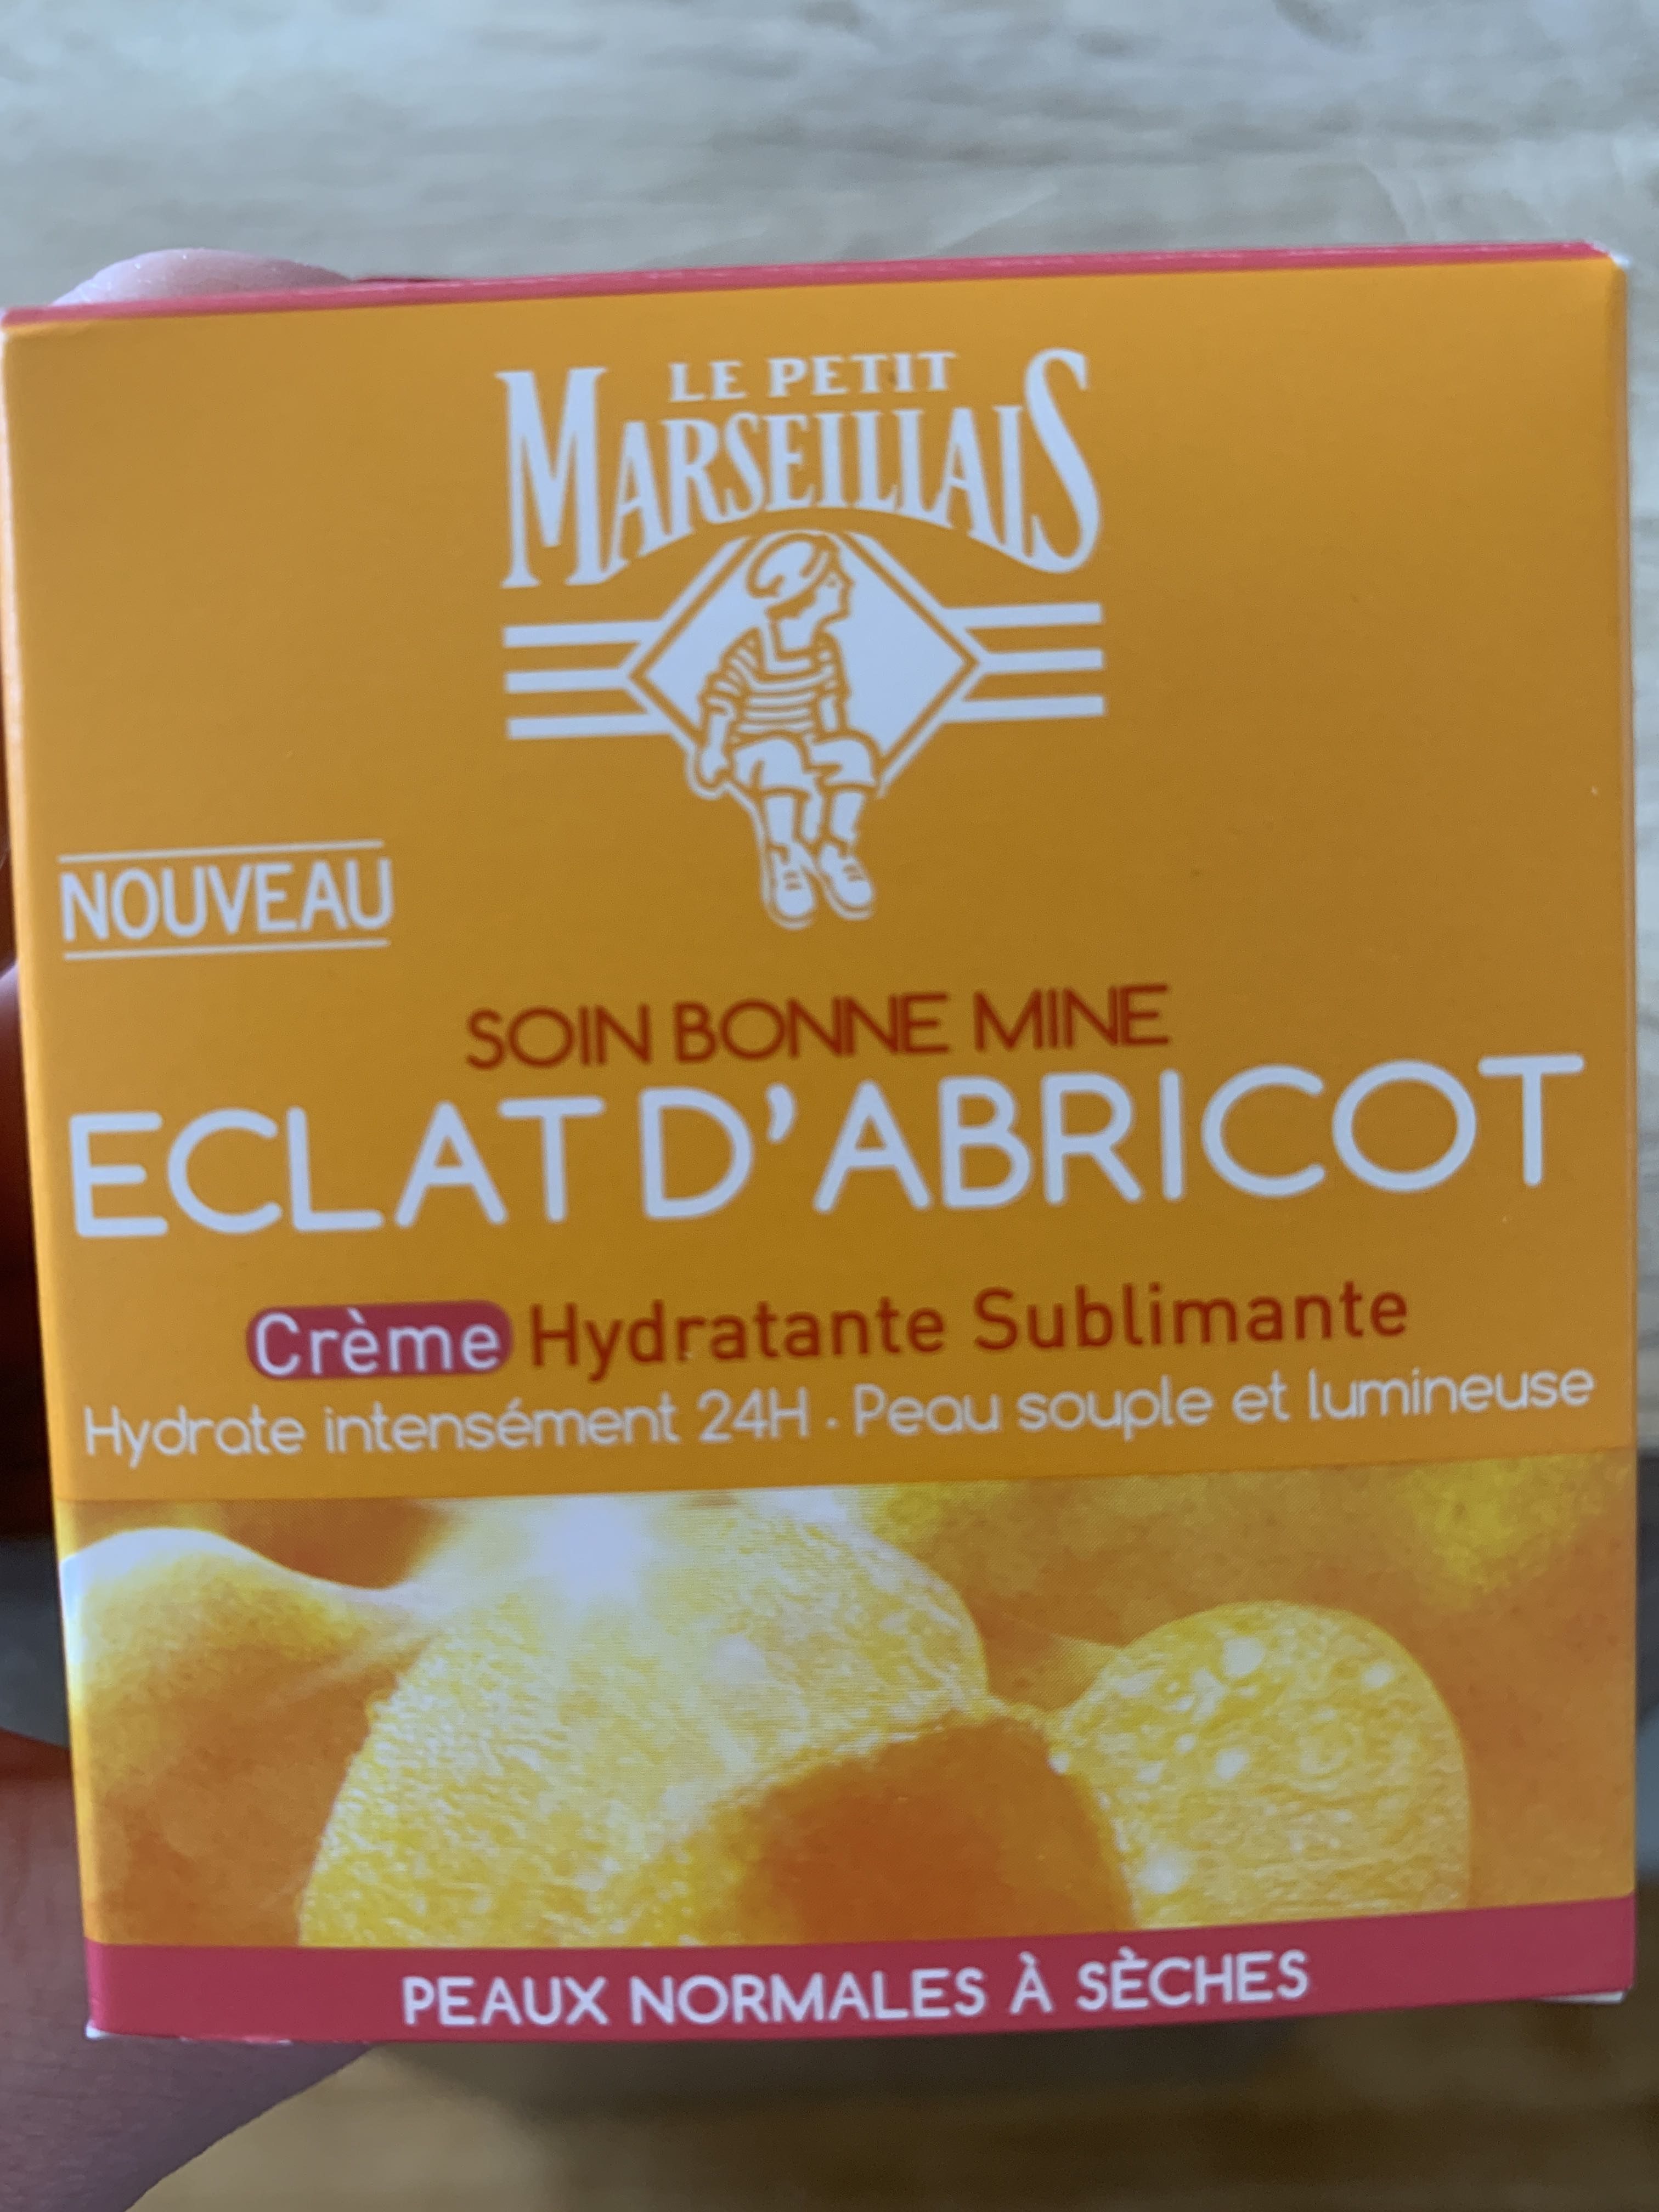 Soin bonne mine éclat d’abricot crème hydratante - Produto - fr